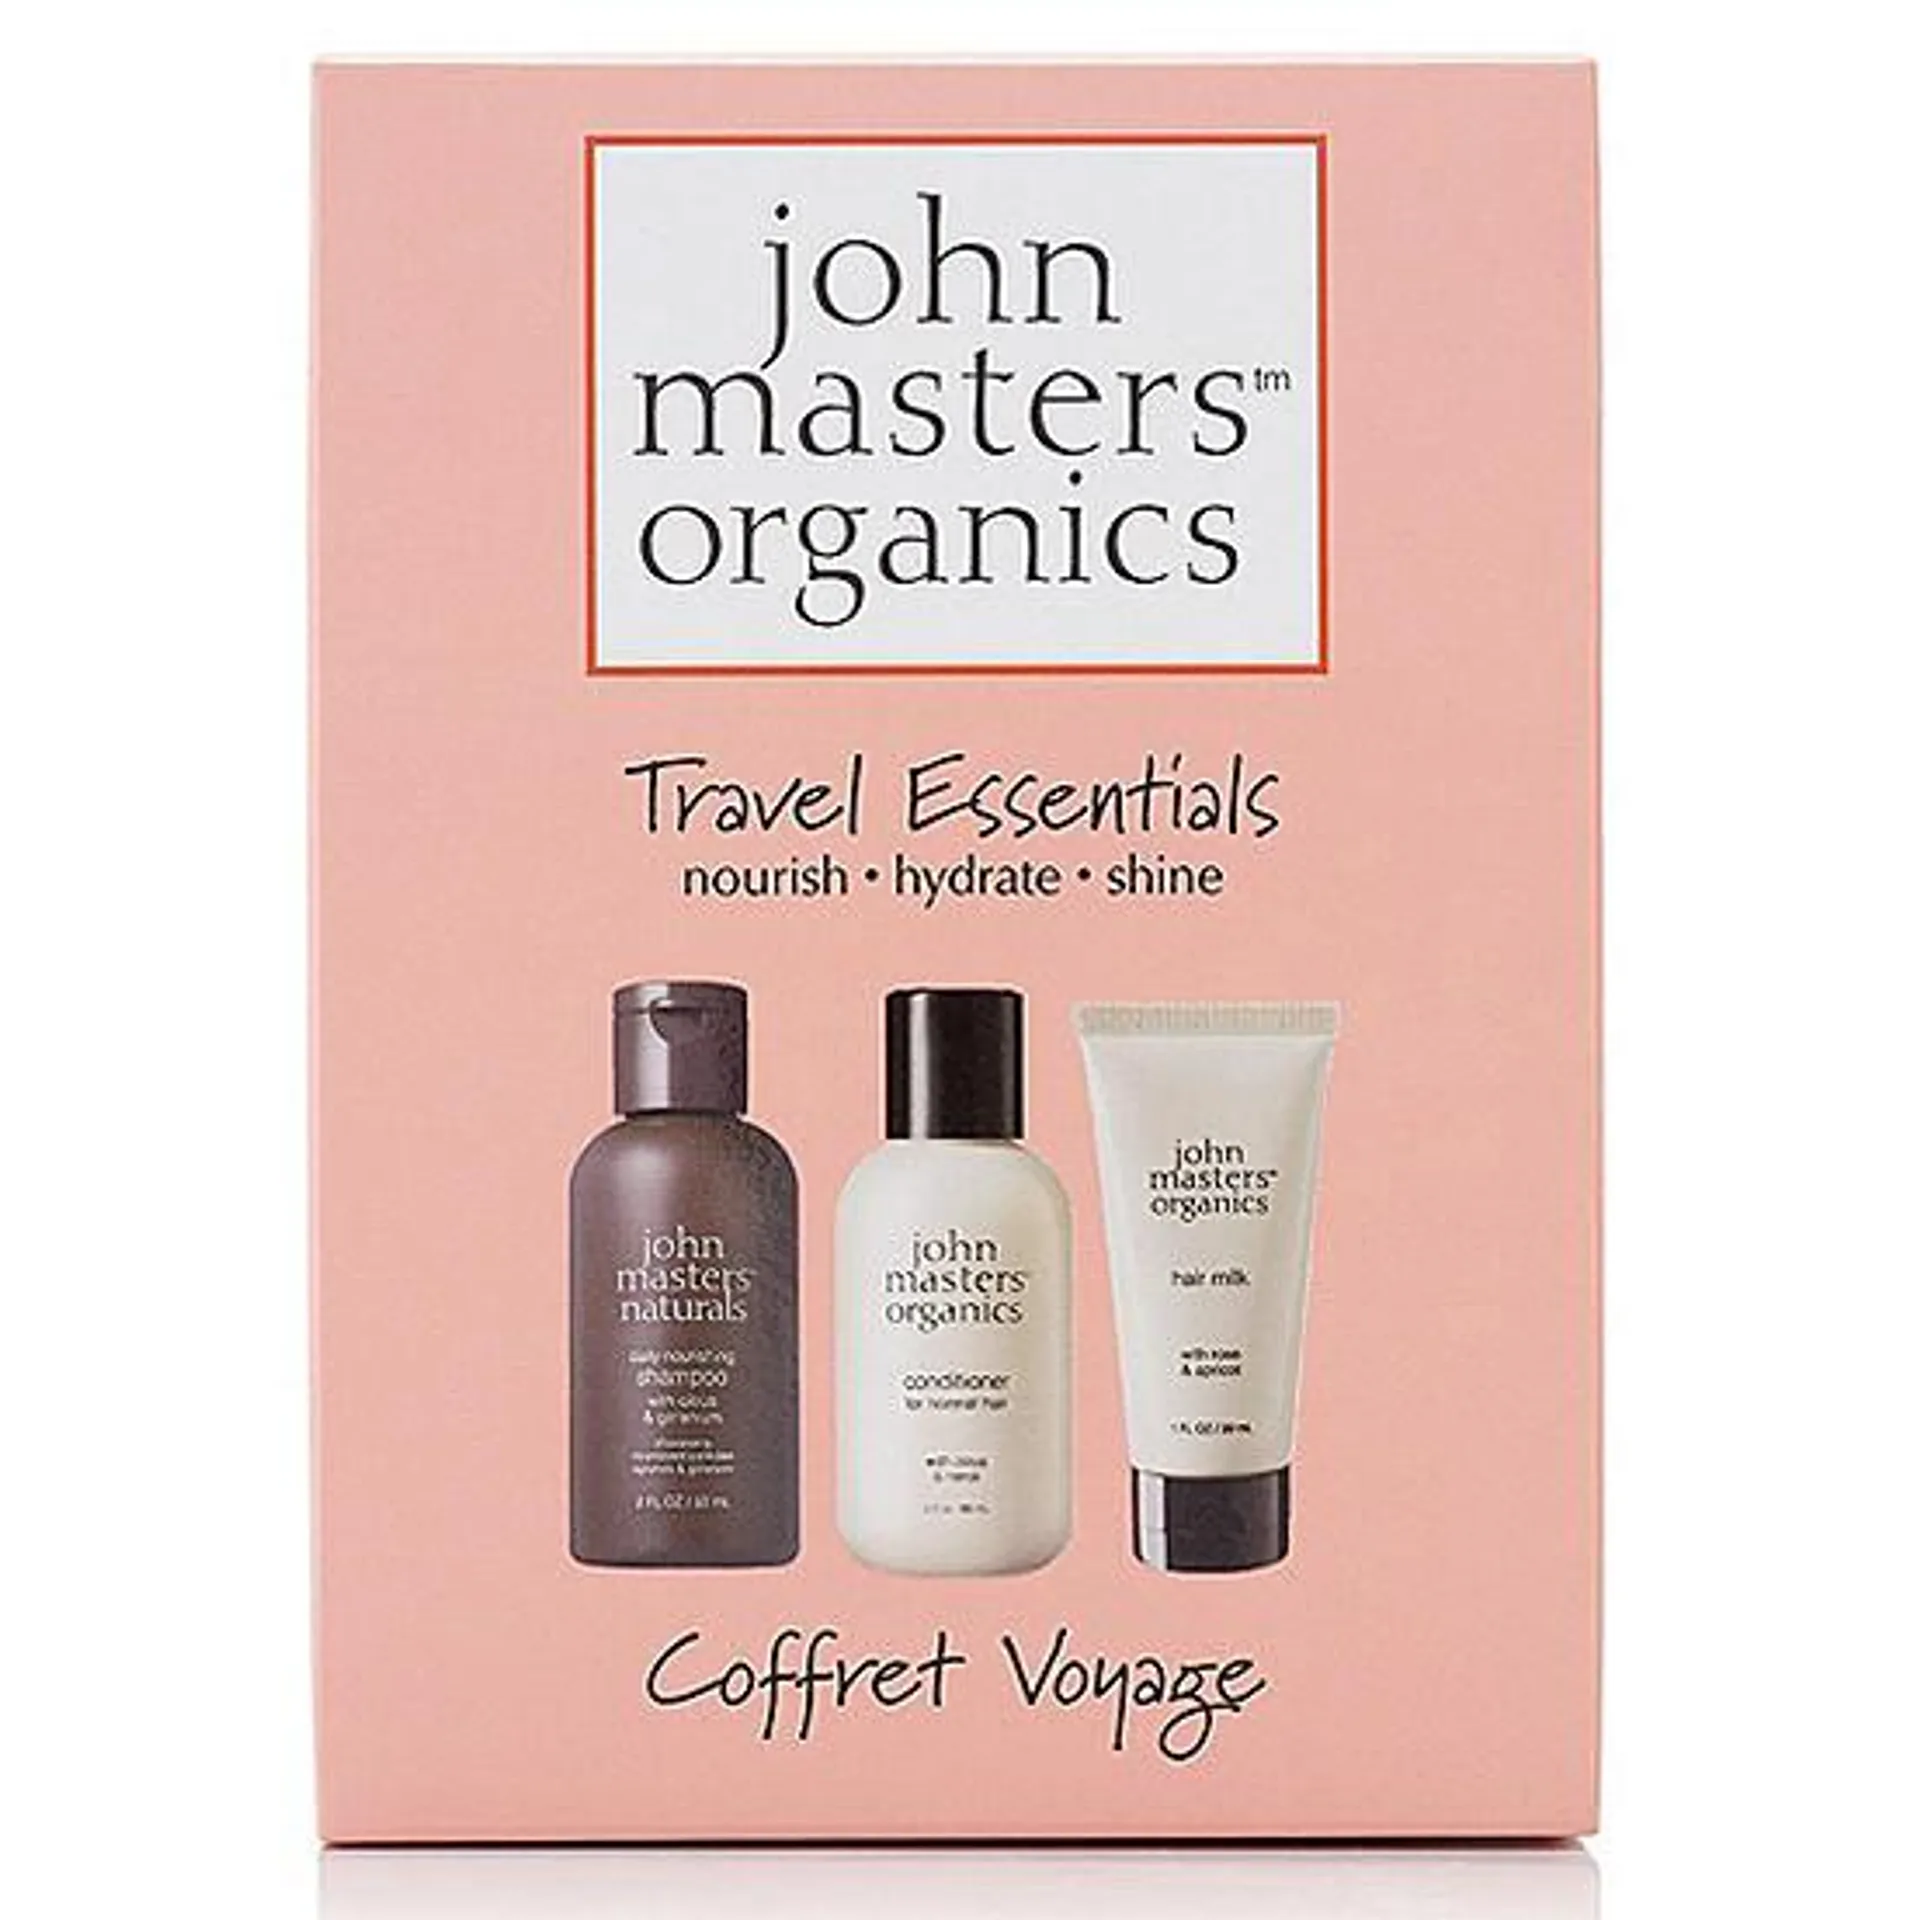 Organics Travel Essentials Box by John Masters Organics